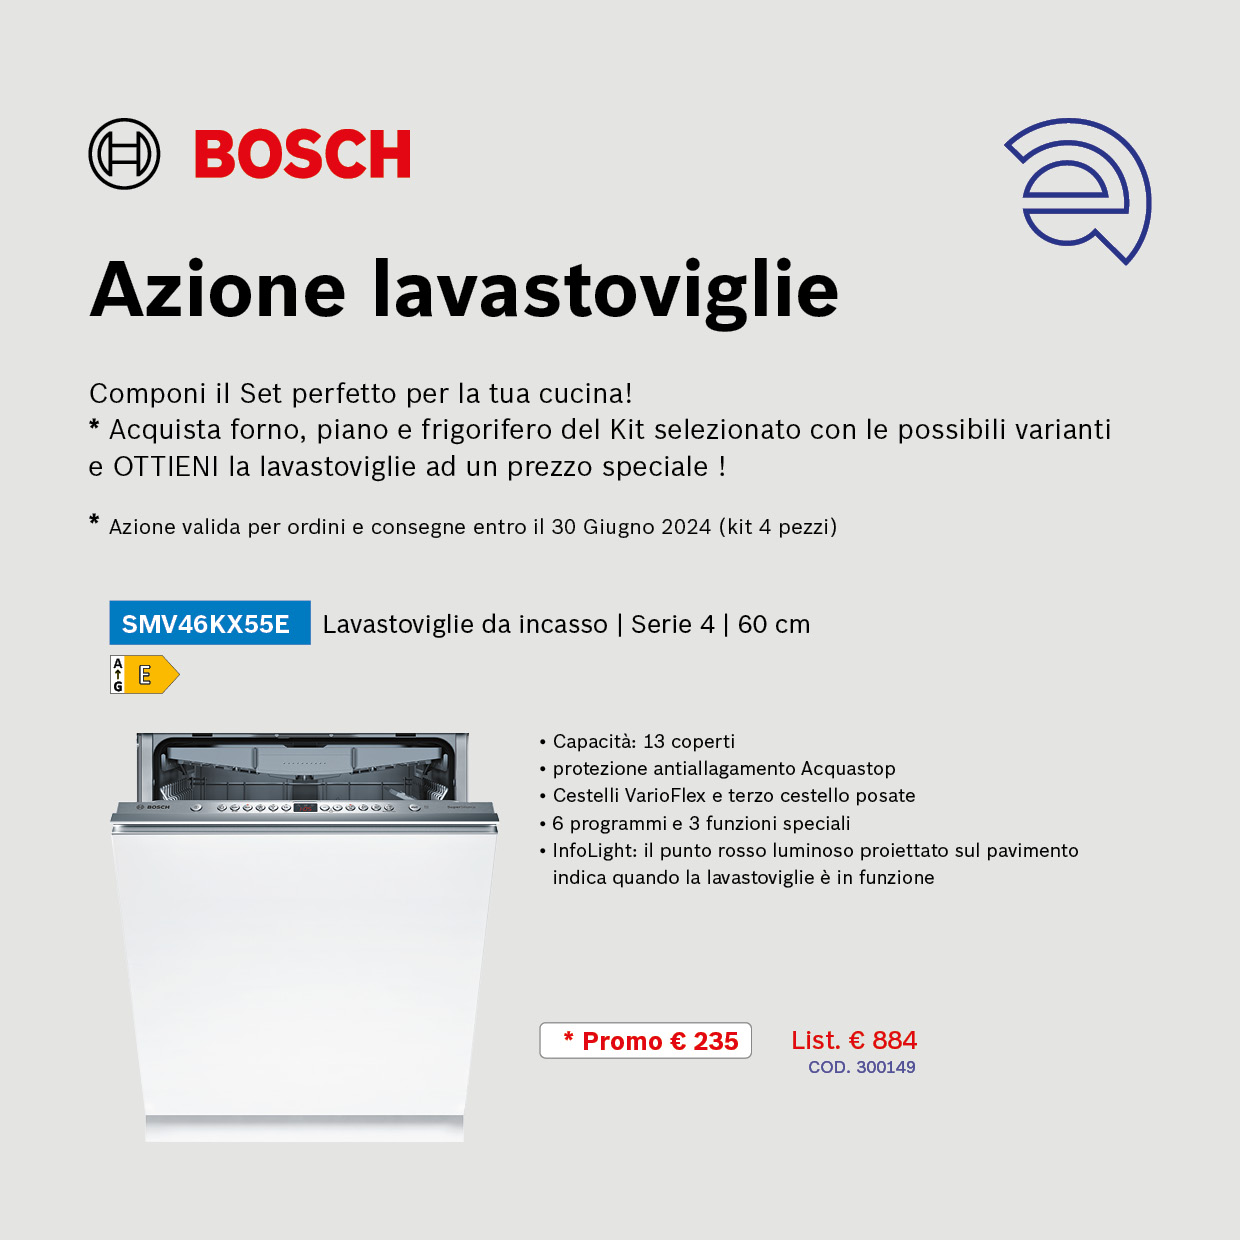 Promozione Lavastoviglie Bosch